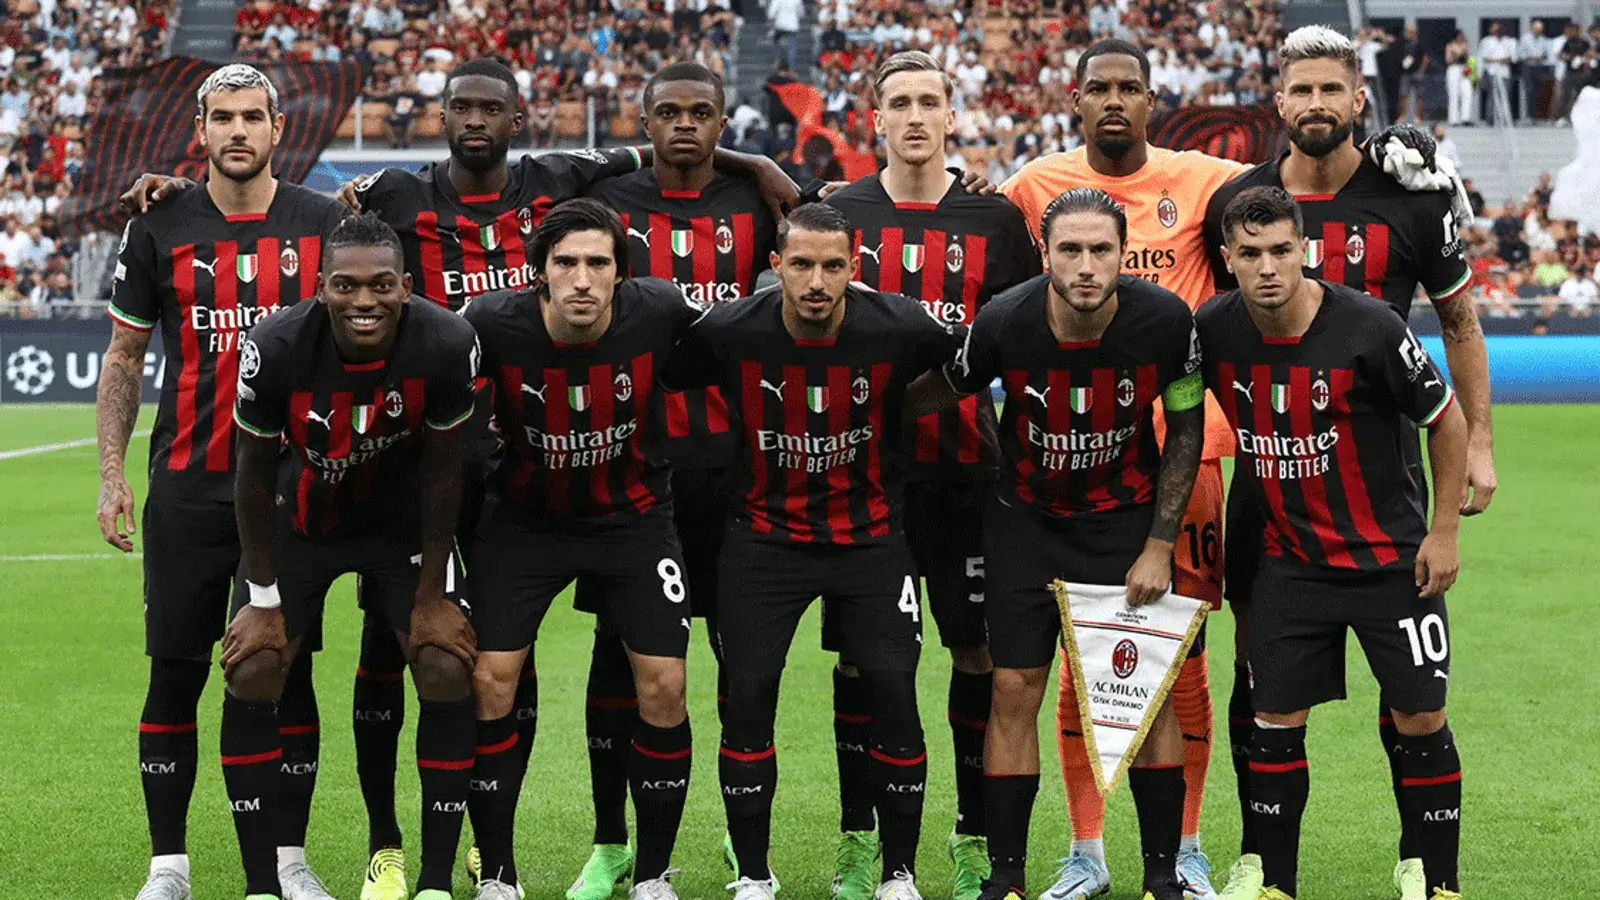 AC Milan ở nước nào? Đội bóng “sọc đỏ đen” lừng danh